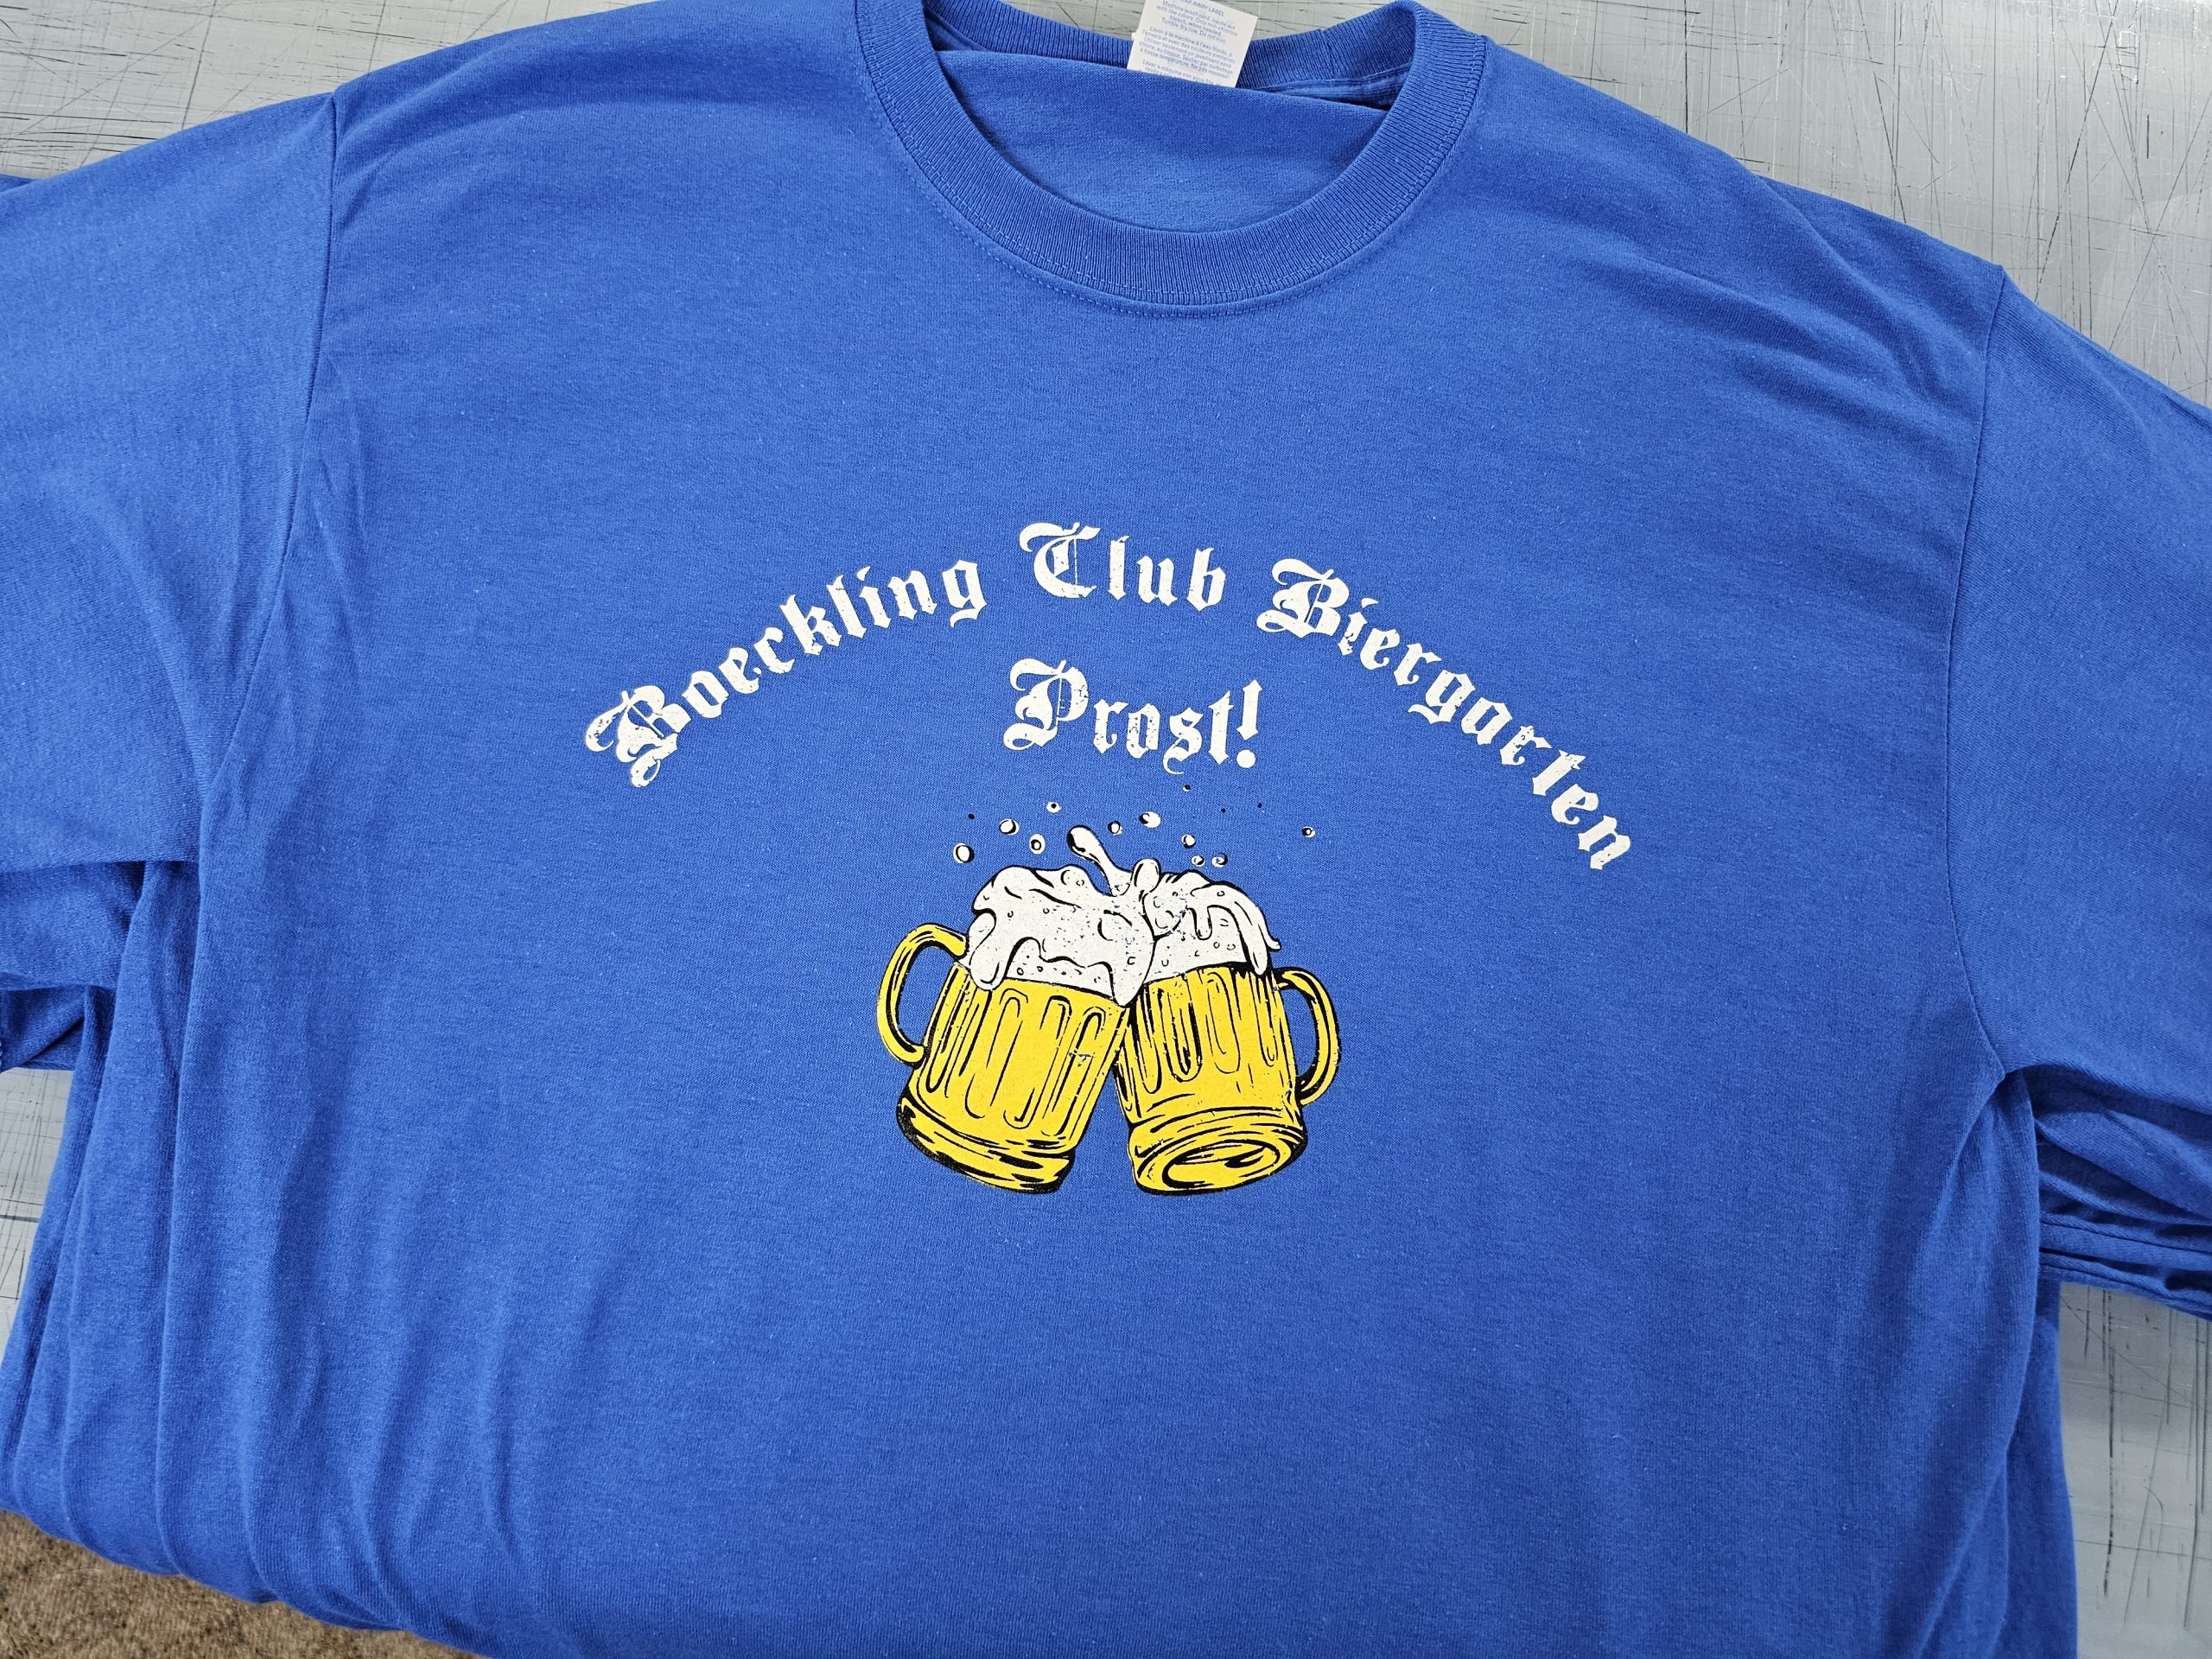 Boeckling Club Shirts